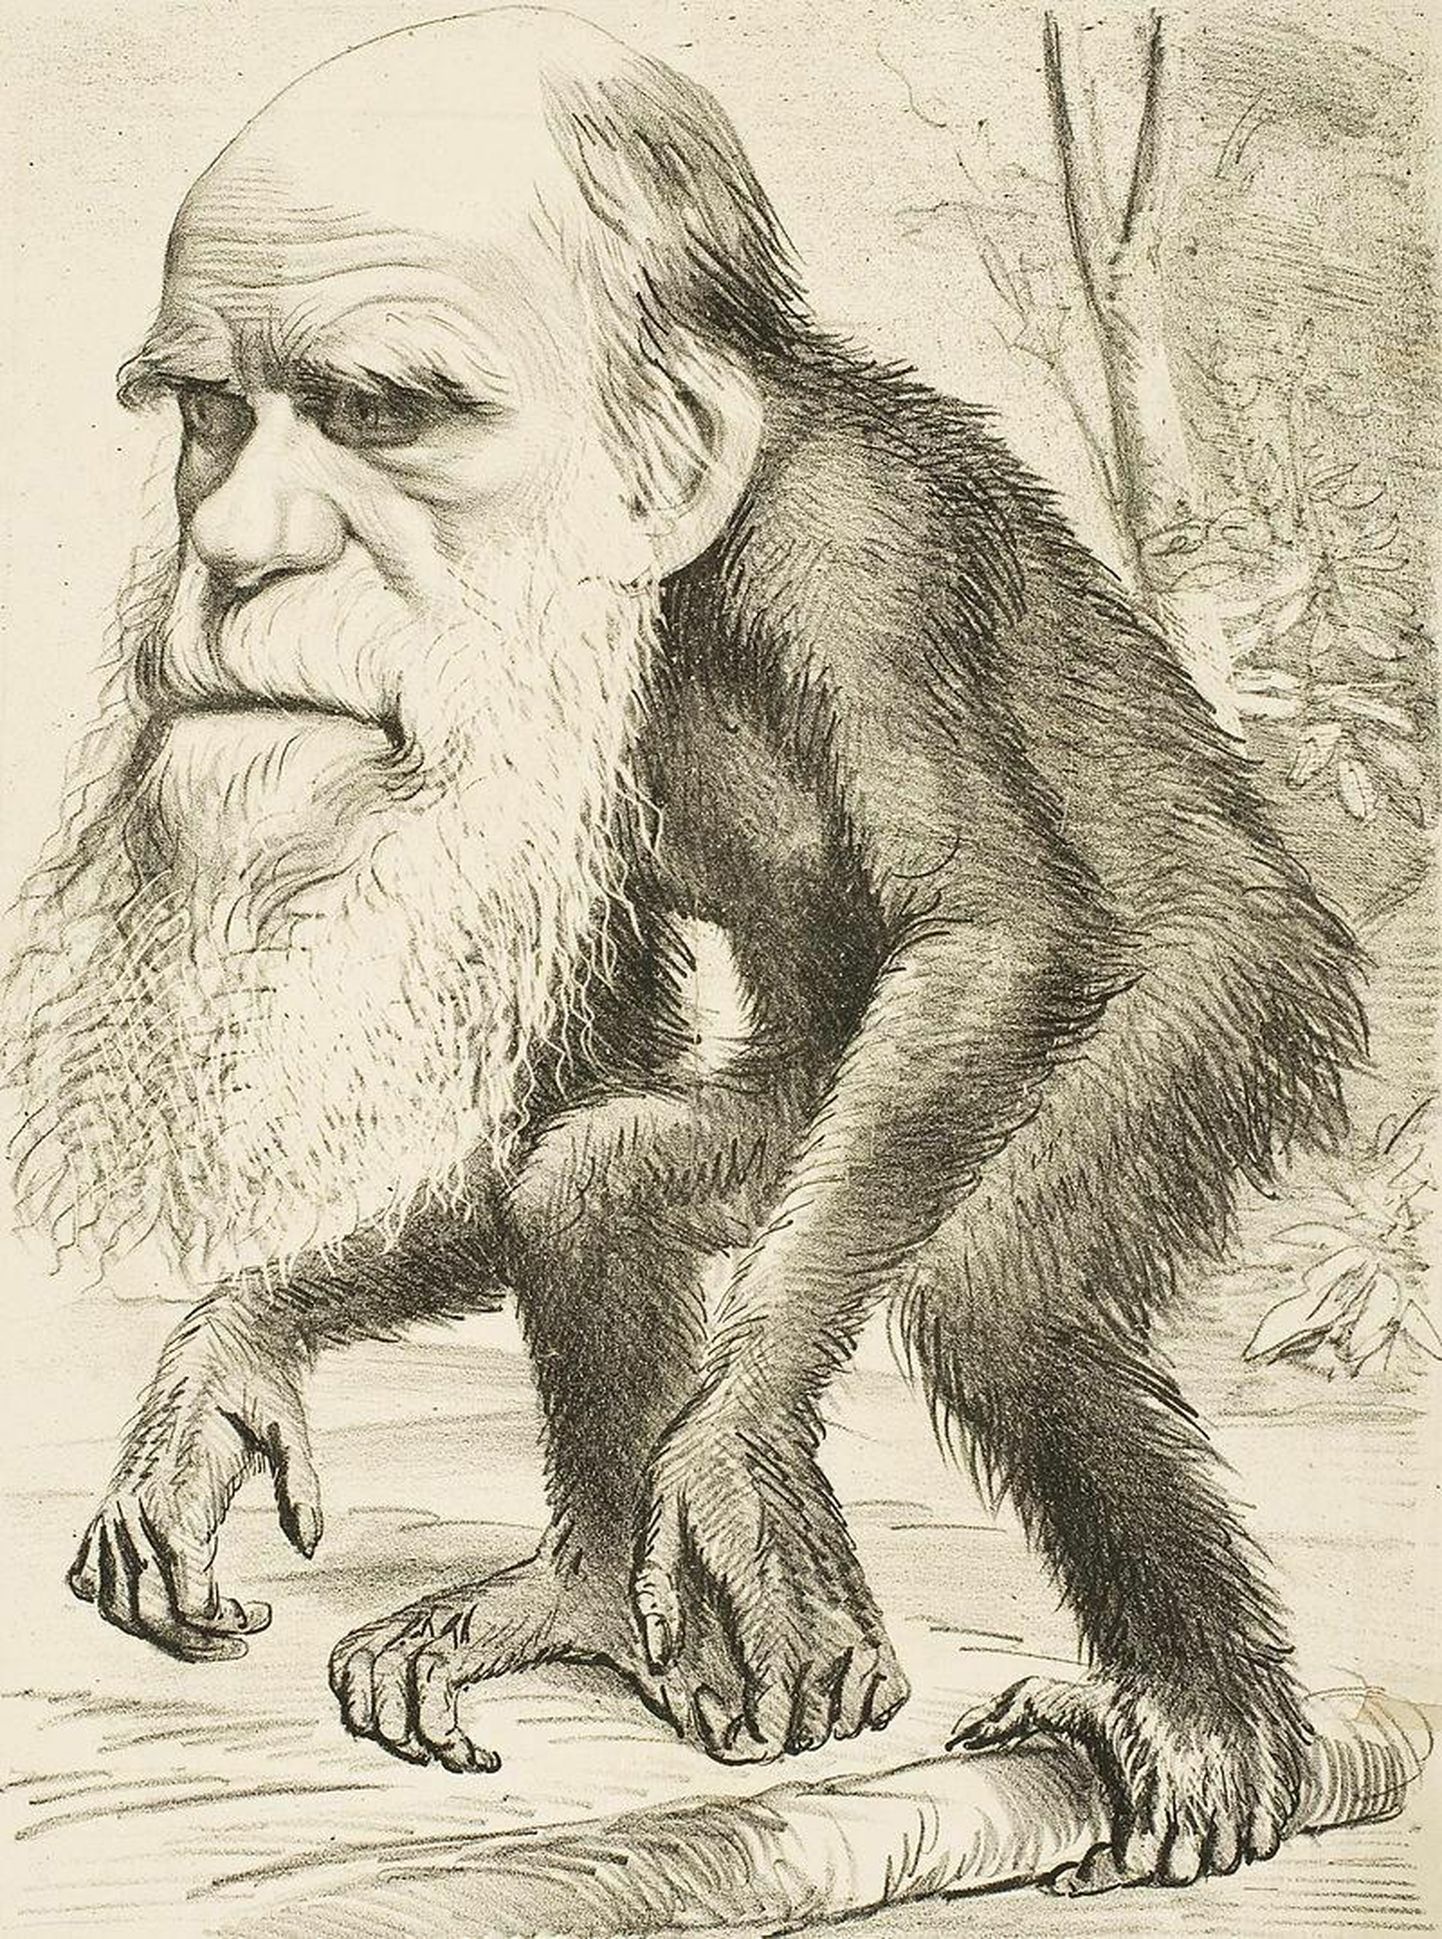 Pärast Charles Darwini raamatu «Inimese põlvnemine» ilmumist 1871. aastal levis autori kujutamine ahvi kehaga. Iroonilisel kombel sobib see 150 aastat tagasi satiiriajakirjas The Hornet trükitud karikatuur näitlikustama neokreatsionismi, mis seisneb Frans de Waali sõnul selles, et «see tunnistab evolutsiooni, ent ainult poolenisti. Selle keskne tõekspidamine on, et põlvneme ahvidest küll keha, aga mitte mõistuse poolest. Otsesõnu välja ütlemata eeldab see, et evolutsioon seiskus inimpea juures.»